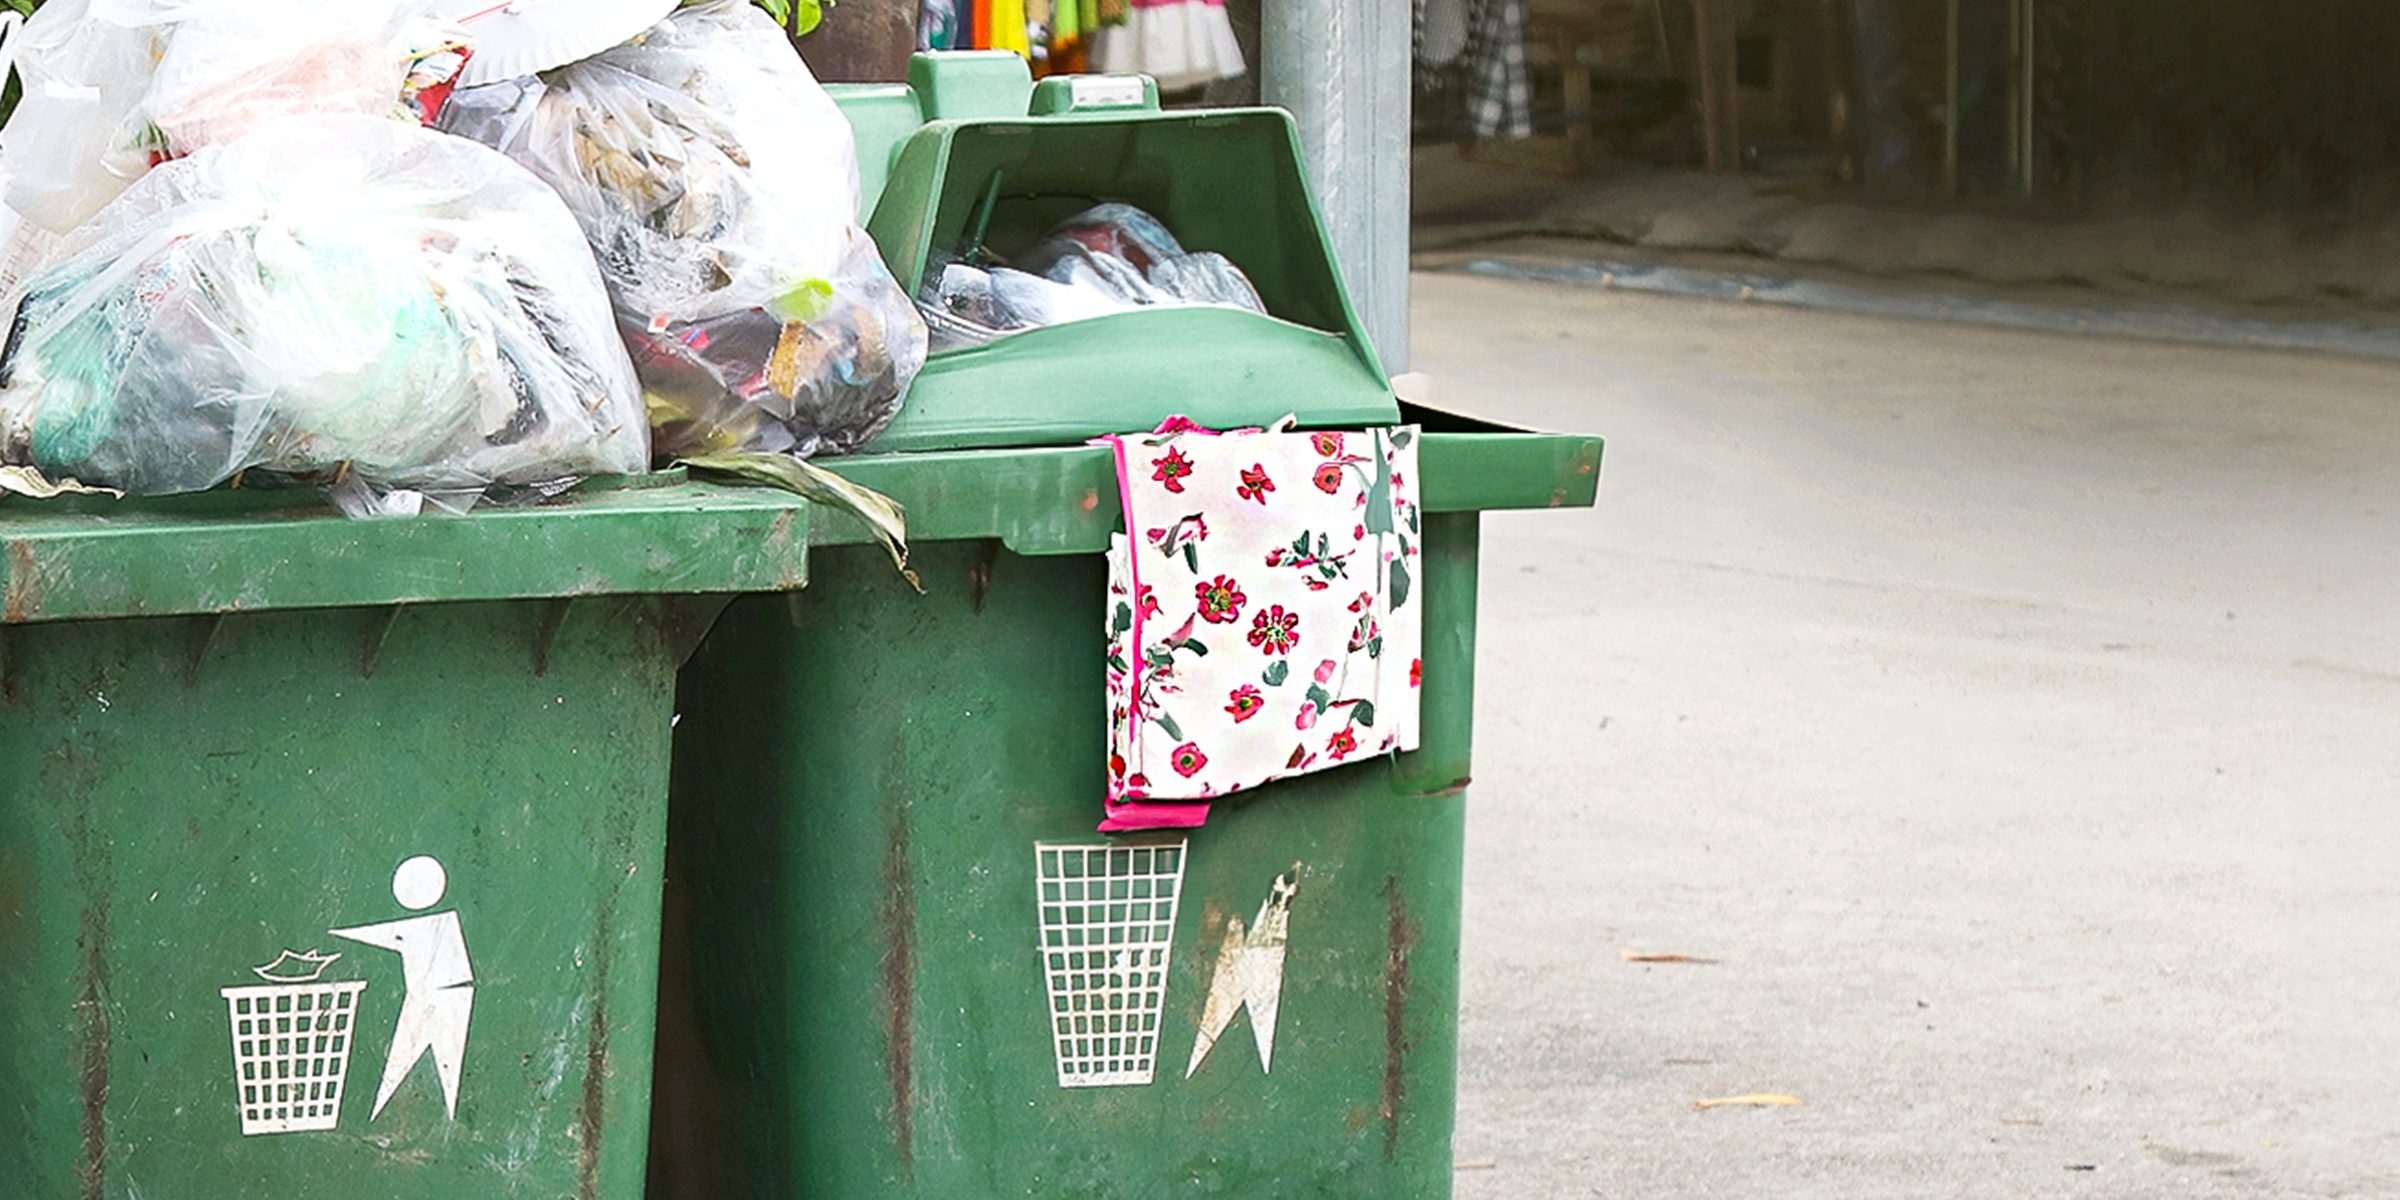 Eine Schürze in einer Mülltonne | Quelle: Shutterstock